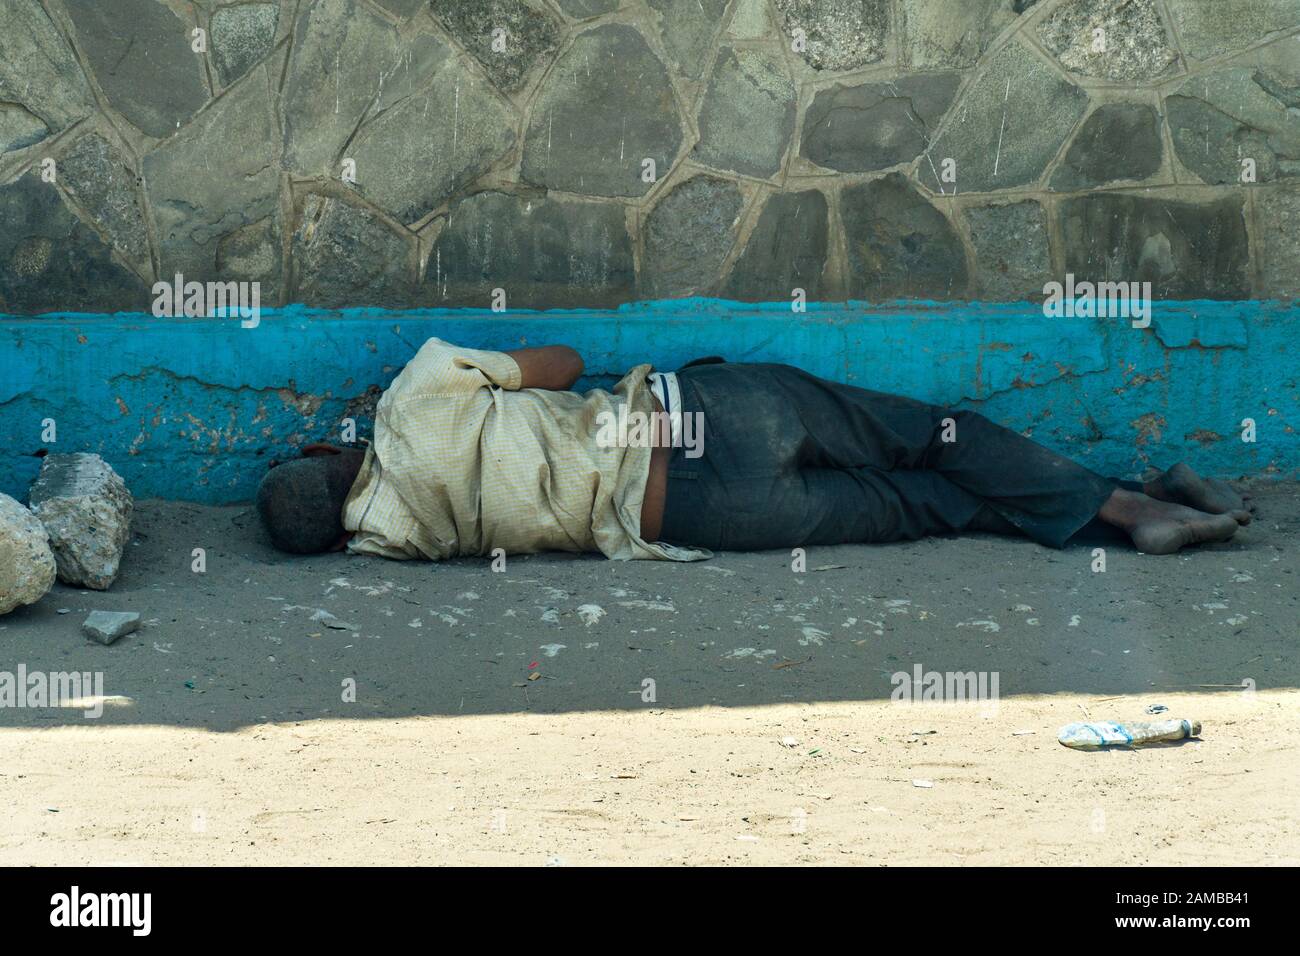 Ein obdachloser kenianischer Mann, der im Schatten eines Gebäudes auf einem sandigen und staubigen Straßenbelag schläft, Mombasa, Kenia Stockfoto